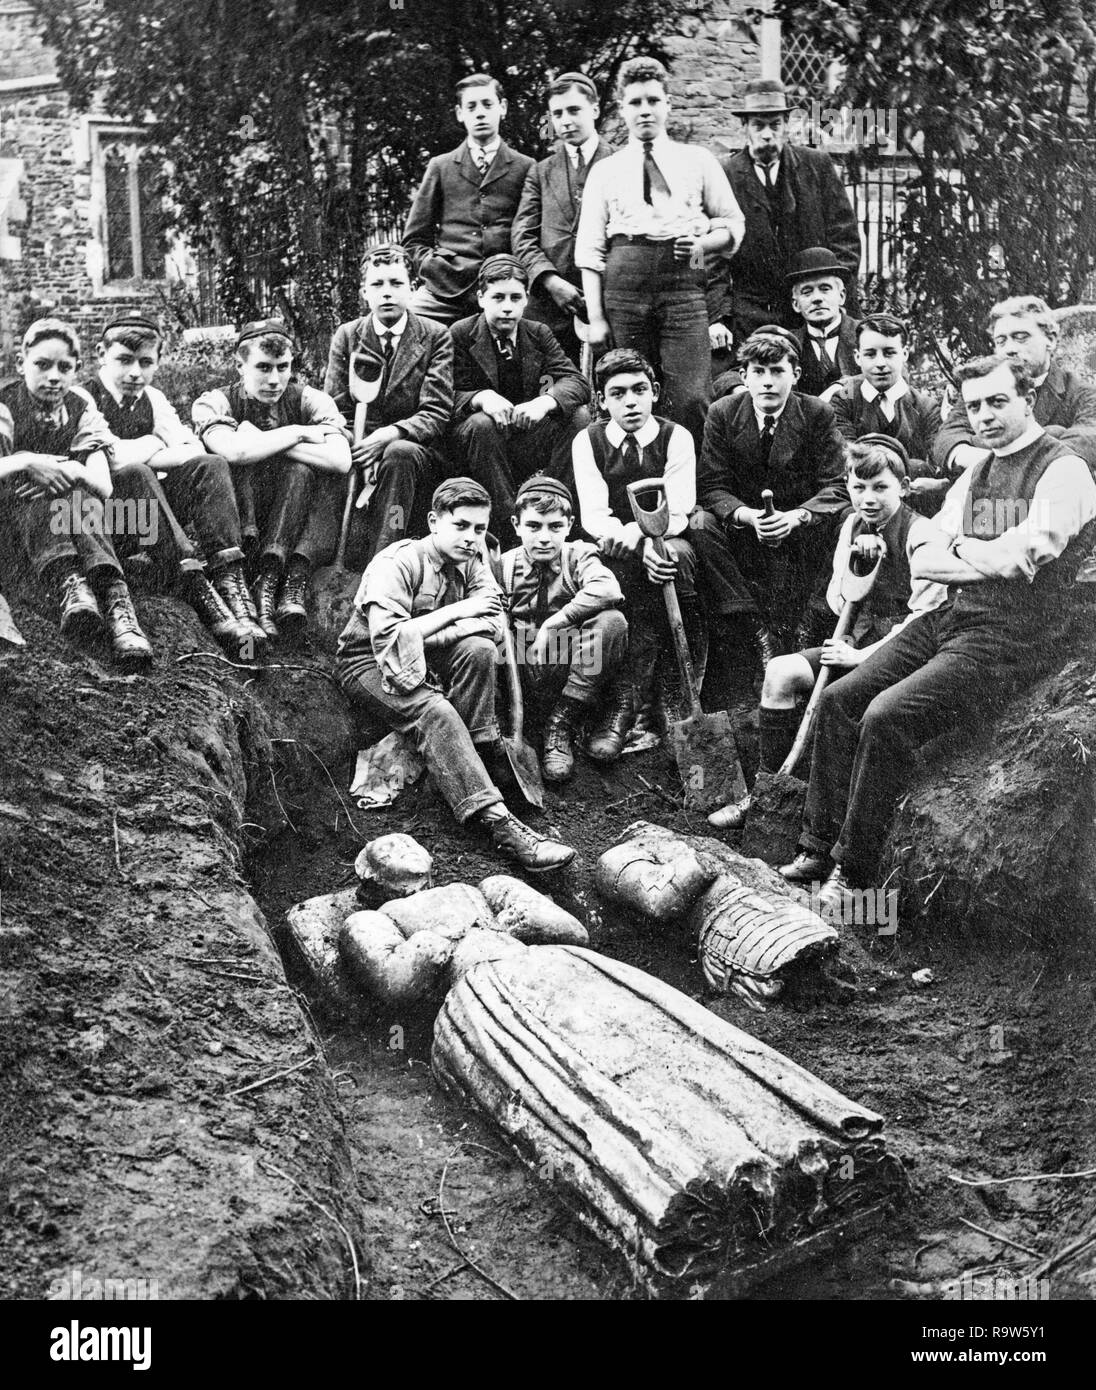 Foto 1918 im Dorf Millbrook in Bedfordshire, England. Foto zeigt eine Gruppe von Menschen, viele junge Männer, und einige Bildnisse begraben auf dem Friedhof in Millbrook gefunden. Stockfoto